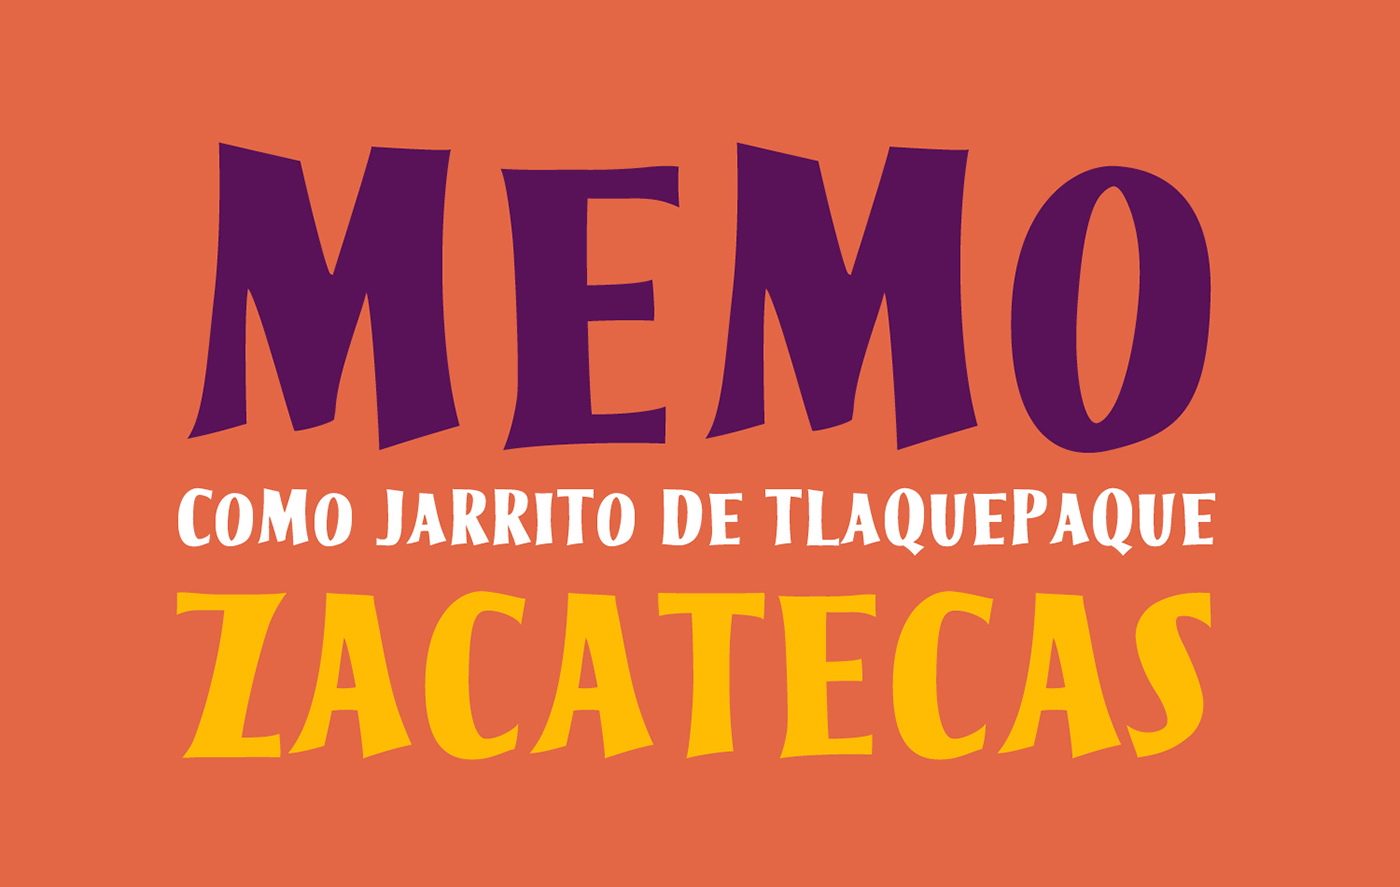 Typeface new Memín Pinguin Cuatacho funny